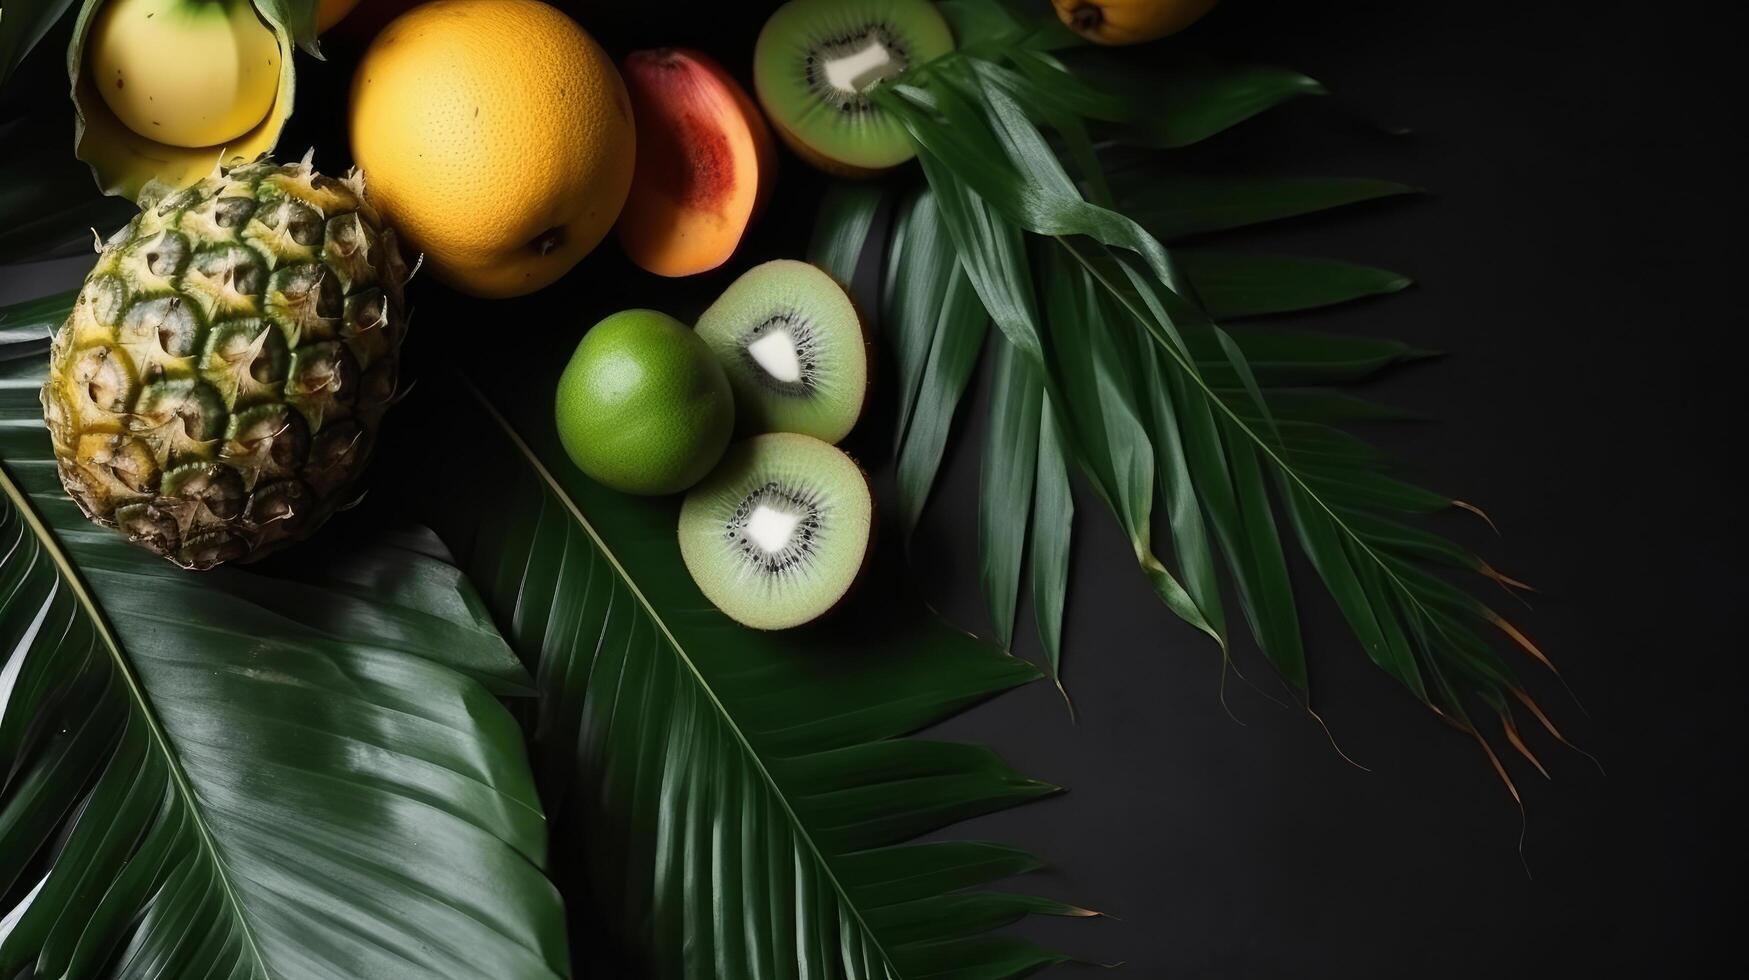 Tropical fruit background. Illustration photo